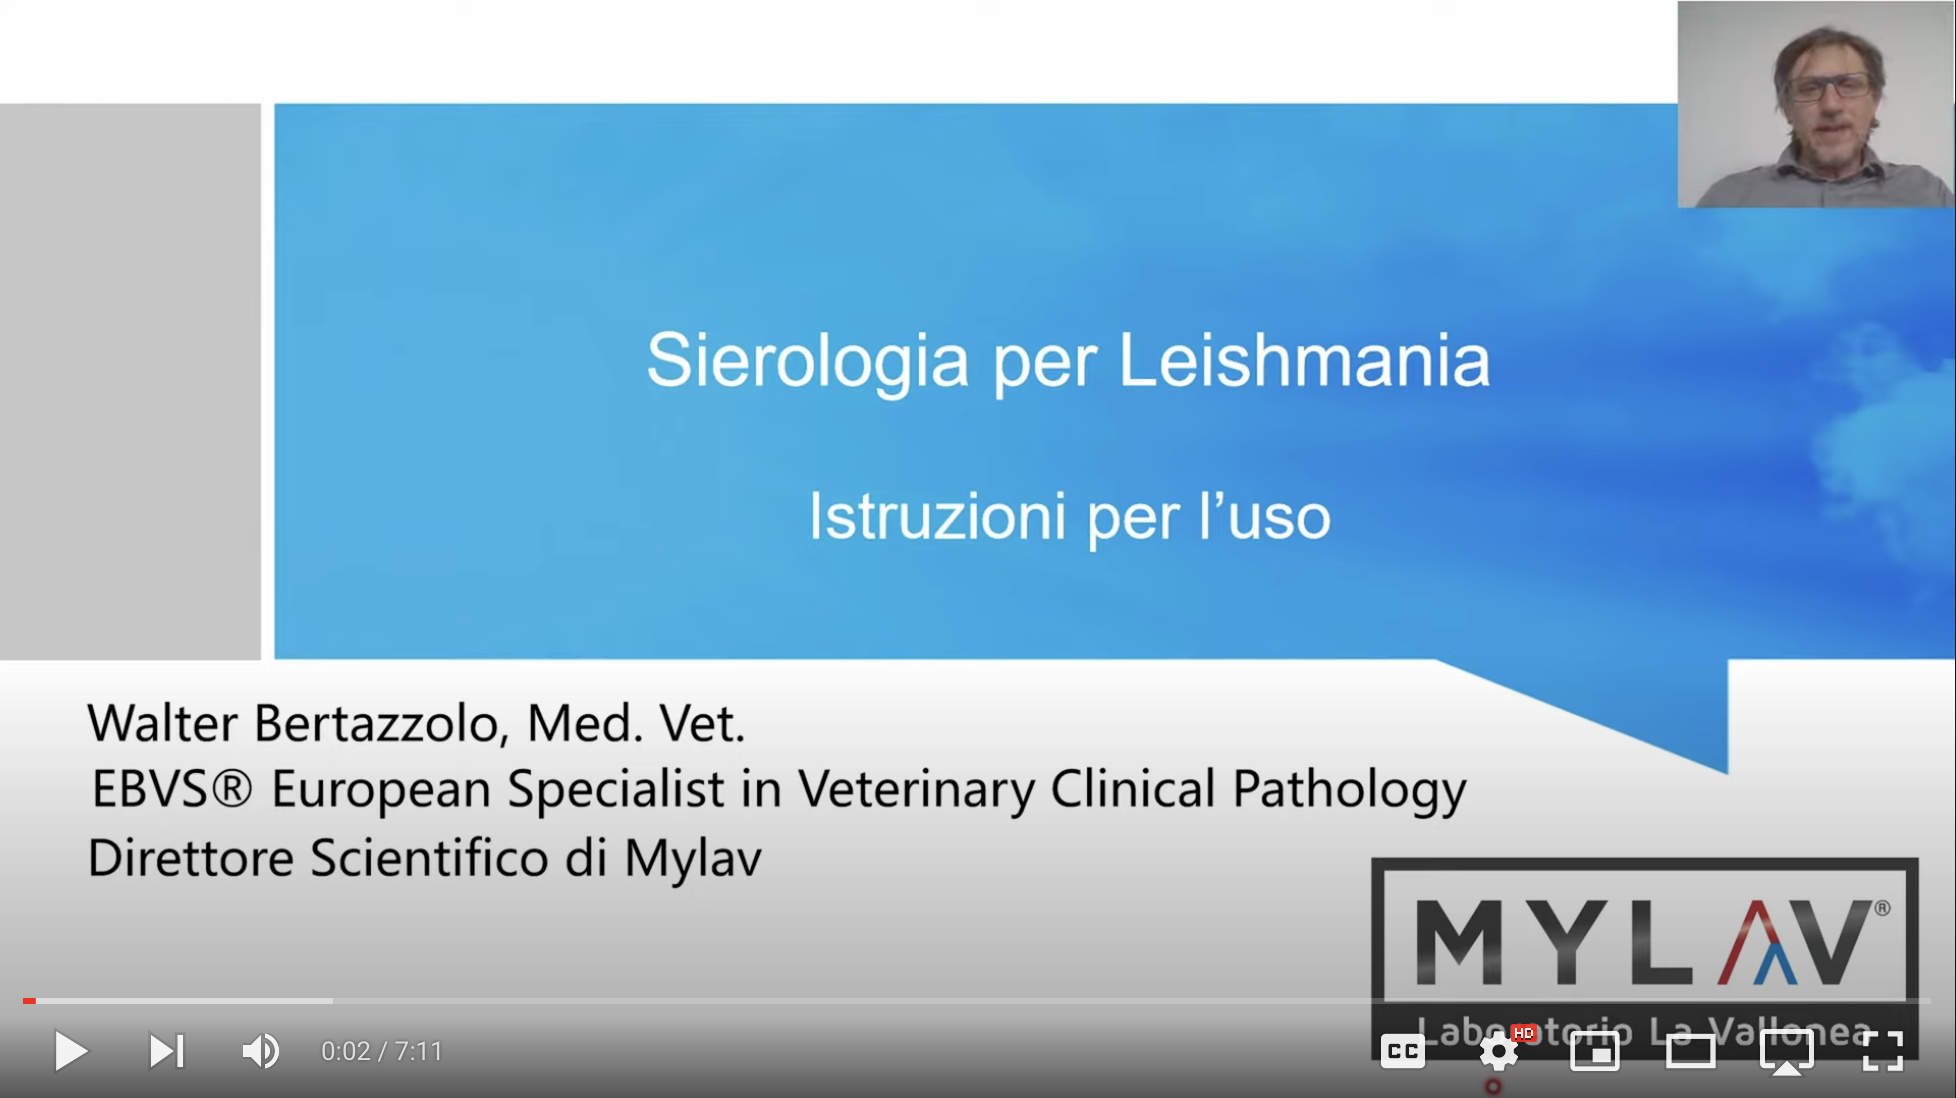 Sierologia per Leishmania: istruzioni per l'uso